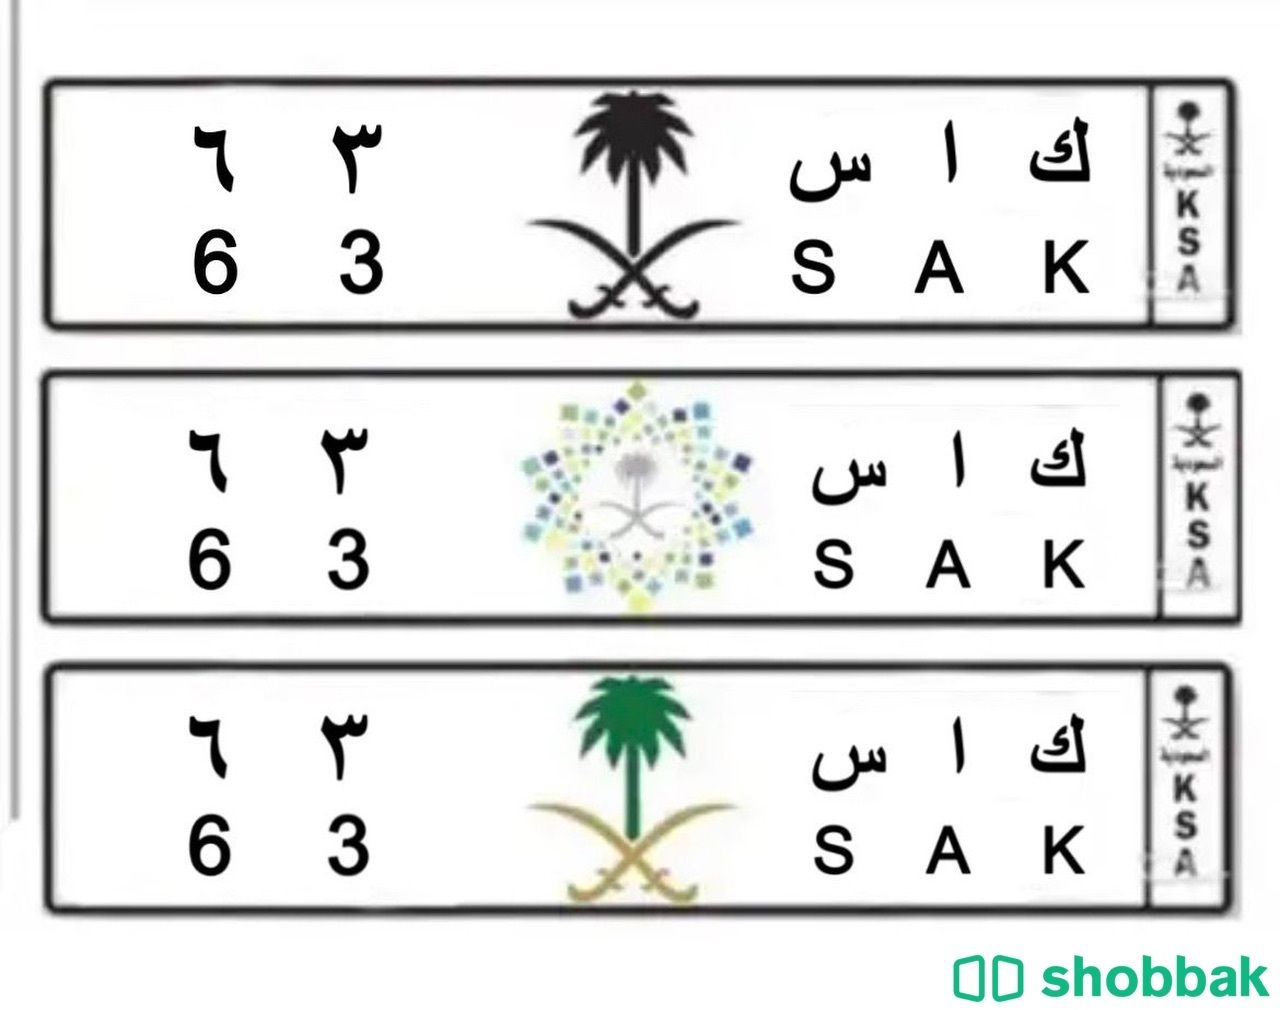 لوحة مميزة لأصحاب المرسيدس Shobbak Saudi Arabia